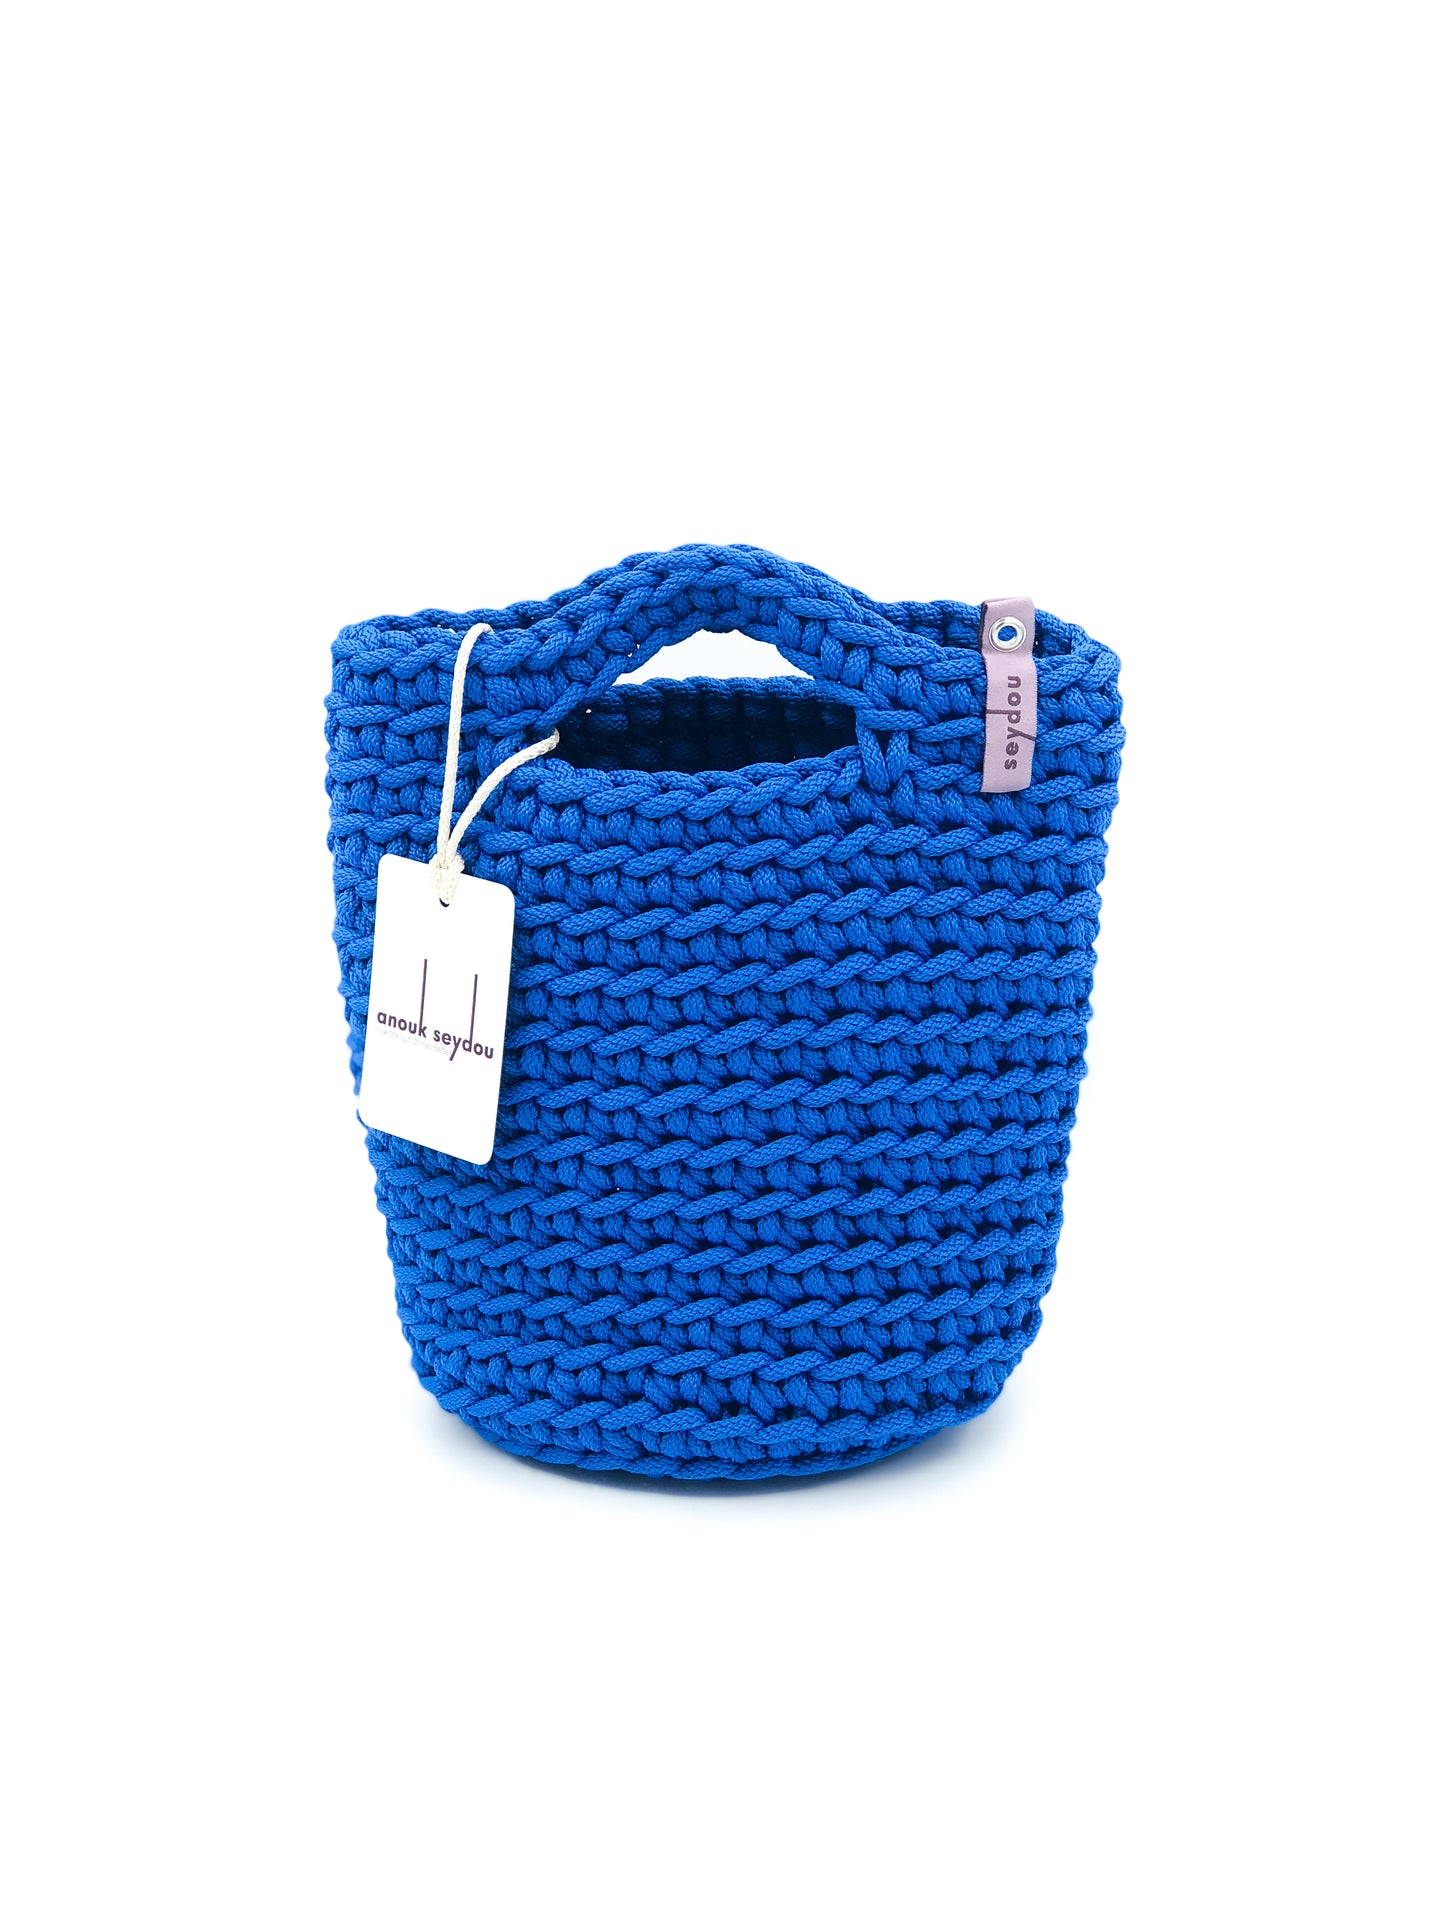 Tote Bag Scandinavian Style Ocean Blue Crochet Size MINI